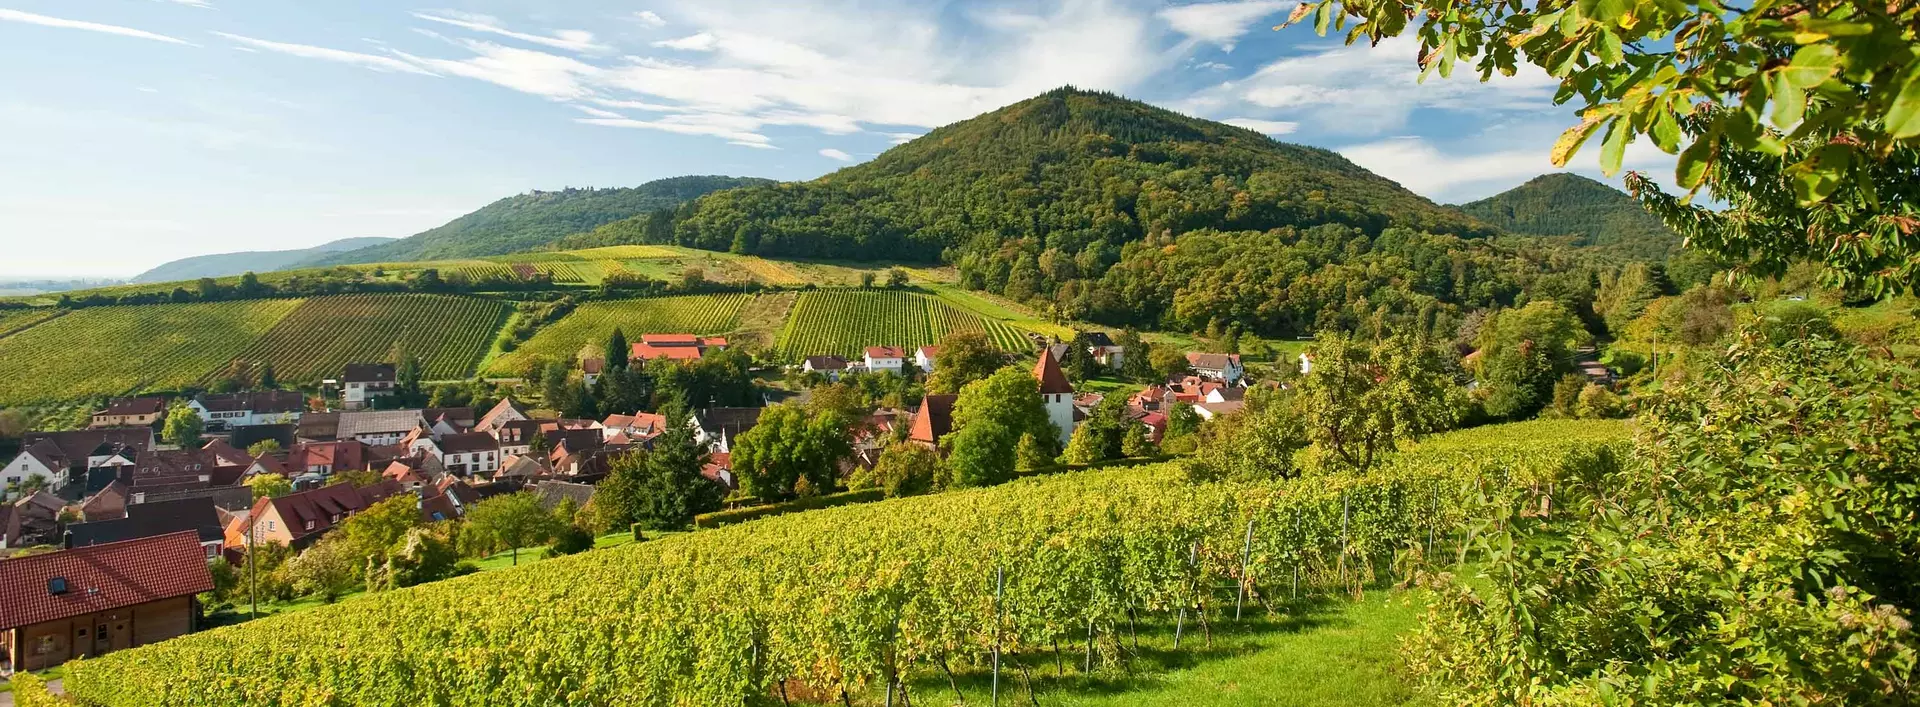 im Urlaub auf dem Weingut in der Pfalz eine Weinbergwanderung machen und den Ausblick auf die Weinlandschaft genießen